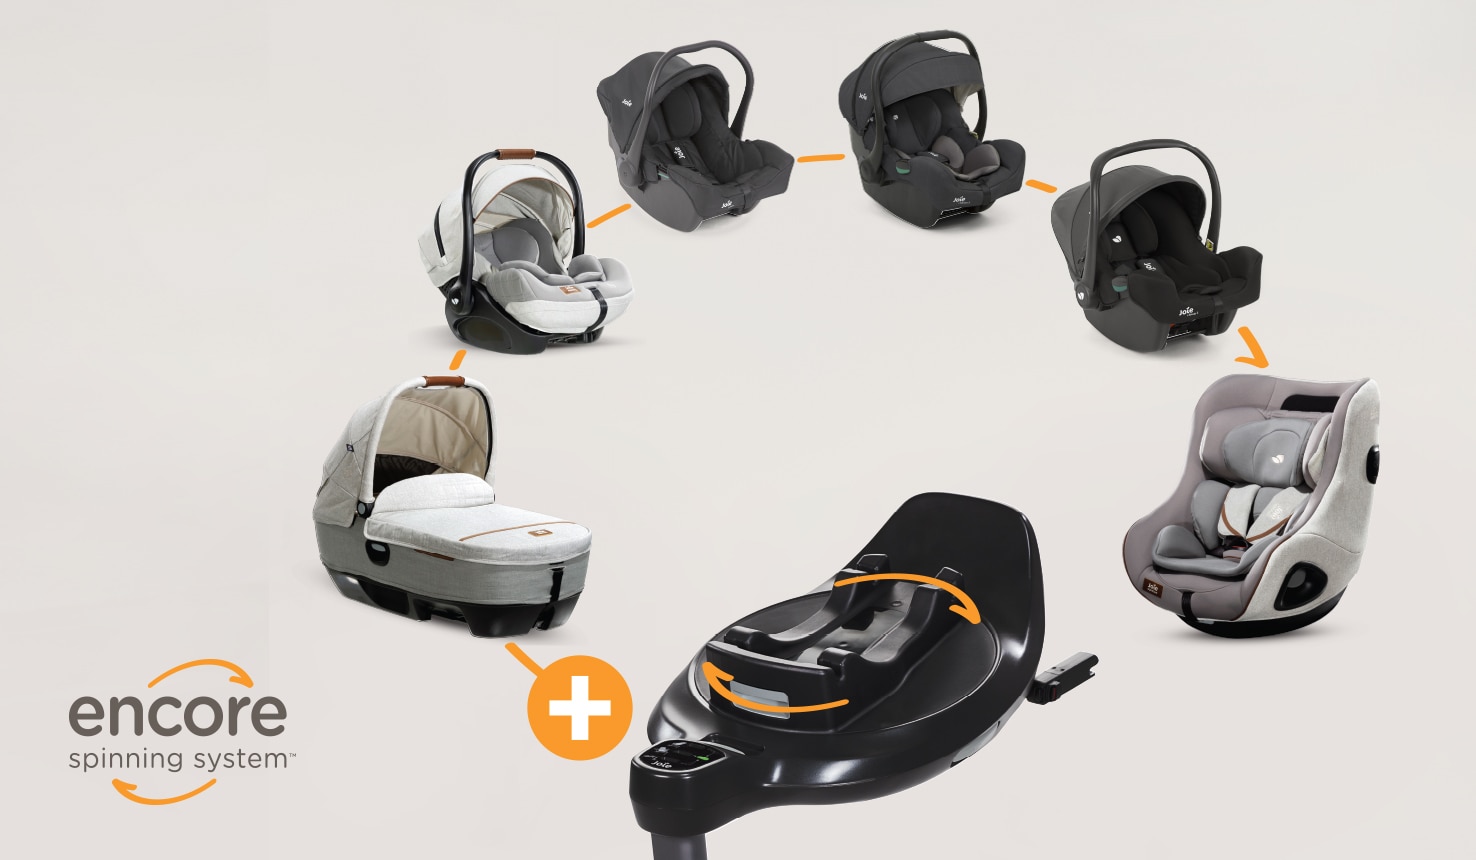  Le socle I-base Encore est compatible avec une grande variété de sièges auto Joie dans le cadre du système de rotation Encore afin de suivre la croissance de l’enfant de la naissance jusqu’à quatre ans.